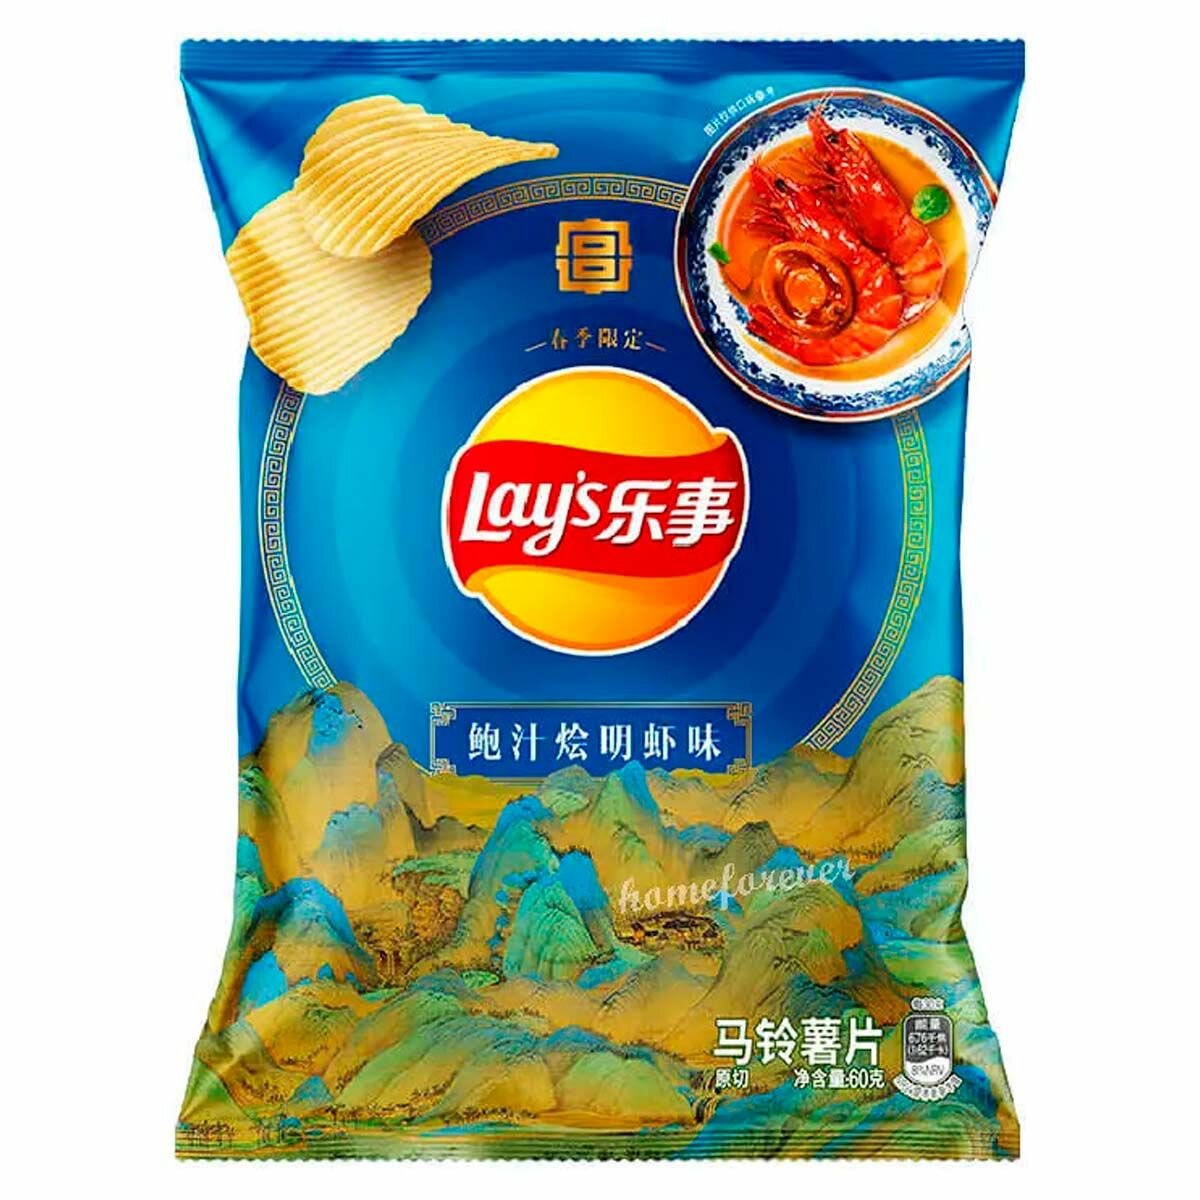 Картофельные чипсы Lay's Braised Shrimp with Abalone Sauce Flavor со вкусом тушёных креветок с абалоновым соусом (Китай), 60 г